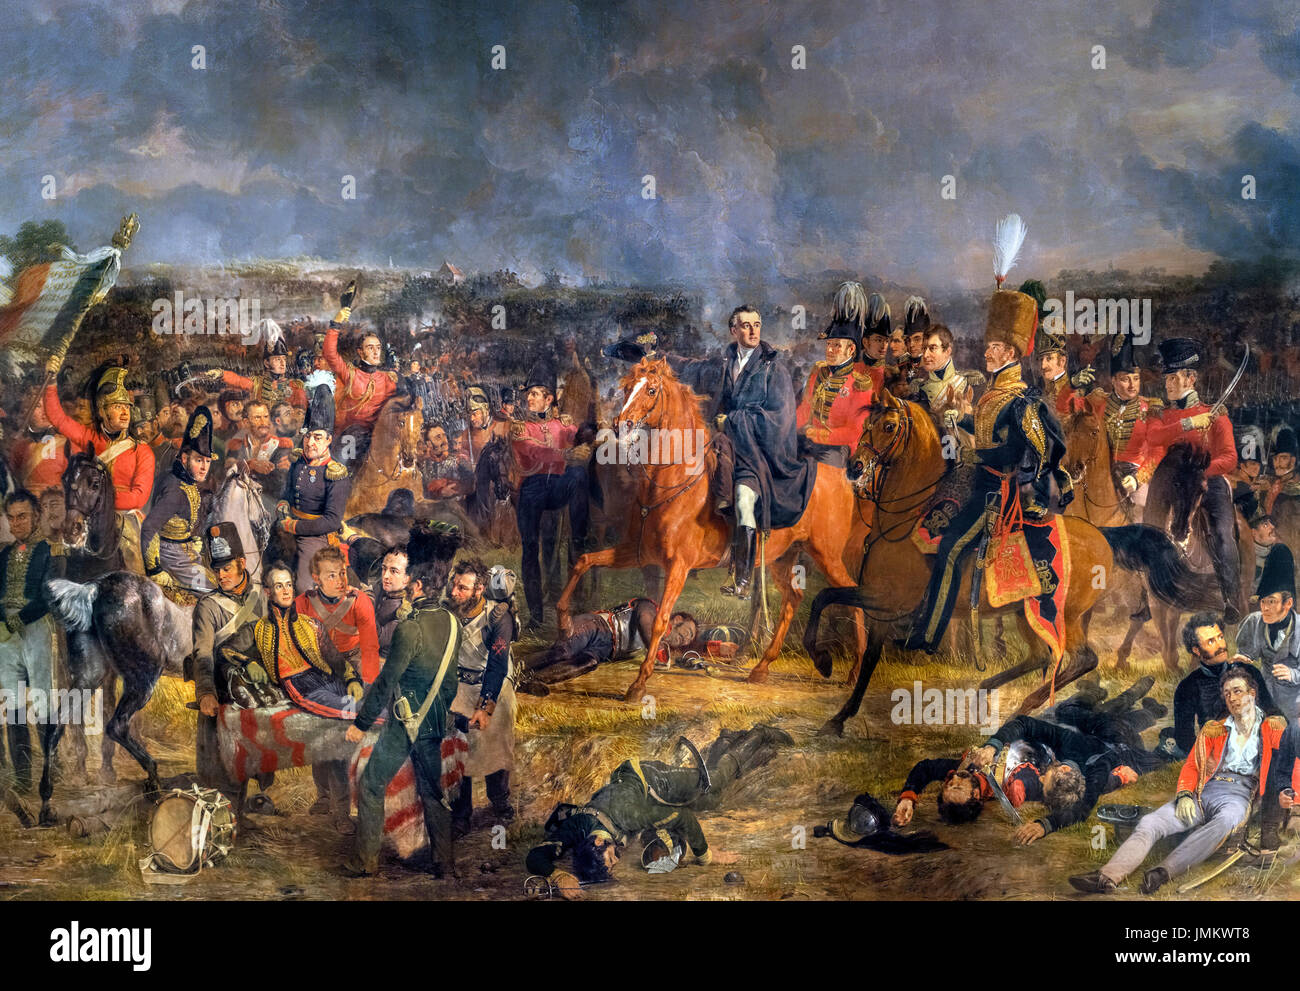 La bataille de Waterloo par Jan Willem Pieneman (1779-1853), huile sur toile, 1824. Le tableau montre le duc de Wellington, à cheval au centre de la photo, à un moment décisif dans la bataille de Waterloo le 18 juin 1815. William, prince d'Orange, est montré blessé sur une civière à l'avant-plan. Banque D'Images